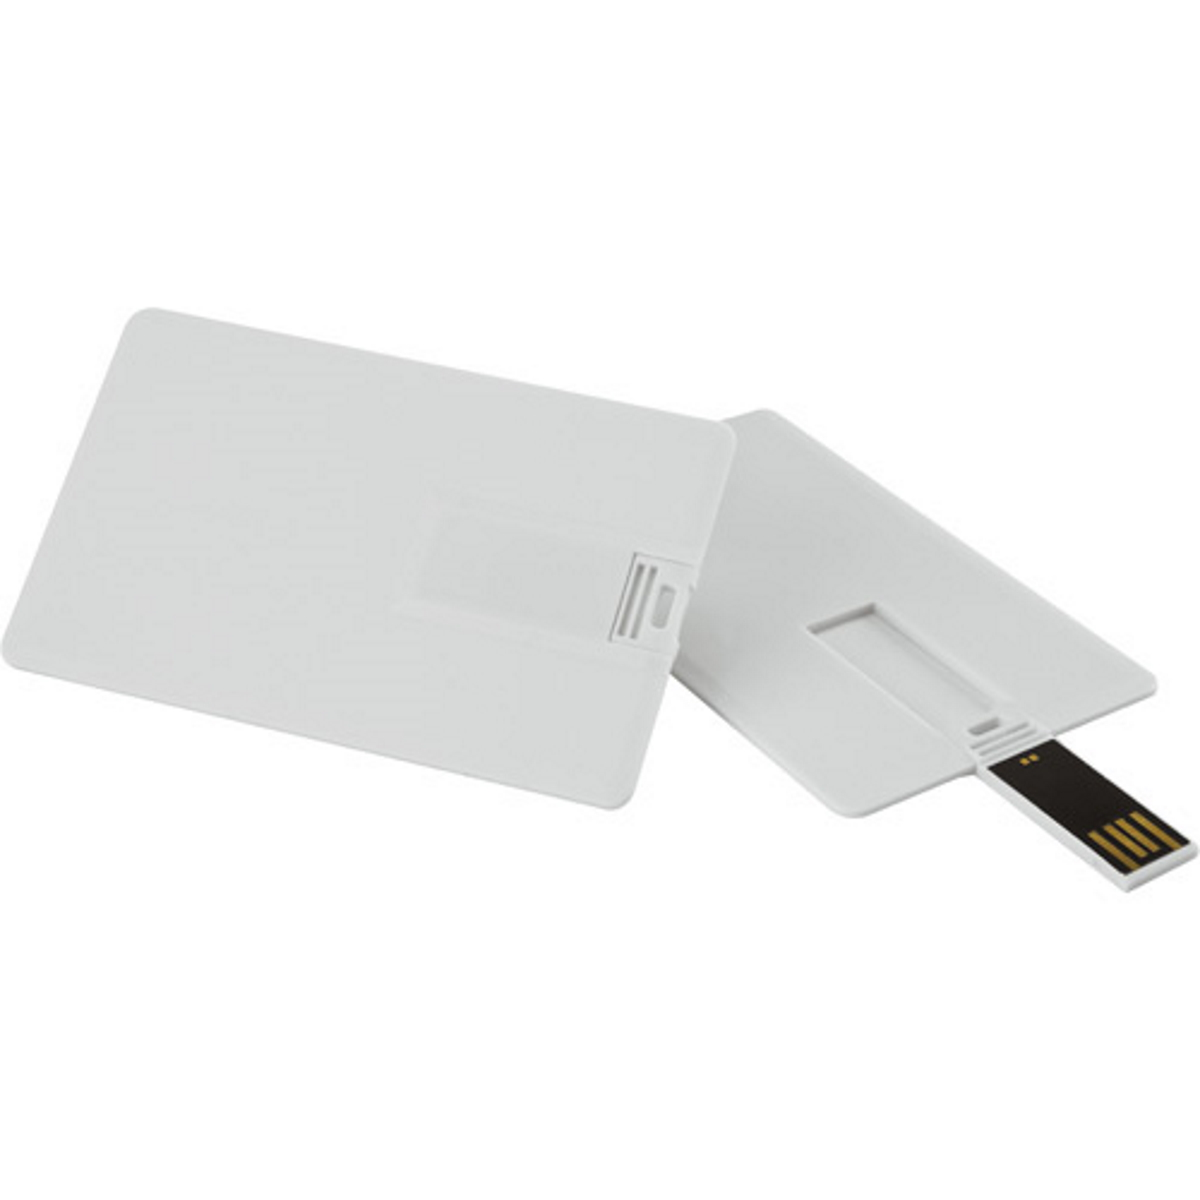 USB GERMANY Kreditkarte ® USB-Stick GB) (Weiss, 4